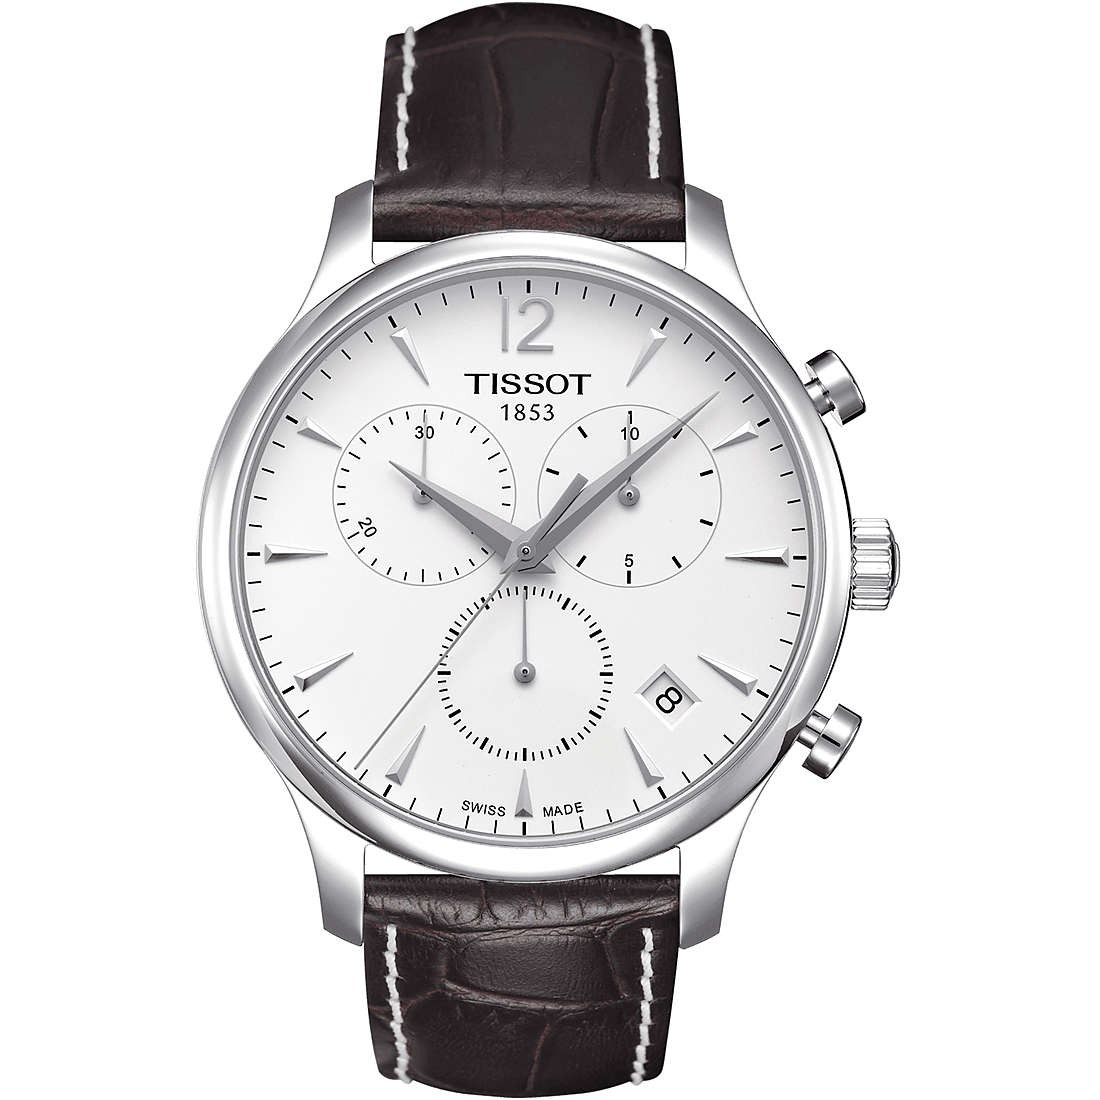 orologio cronografo uomo Tissot T-Classic Tradition T0636171603700